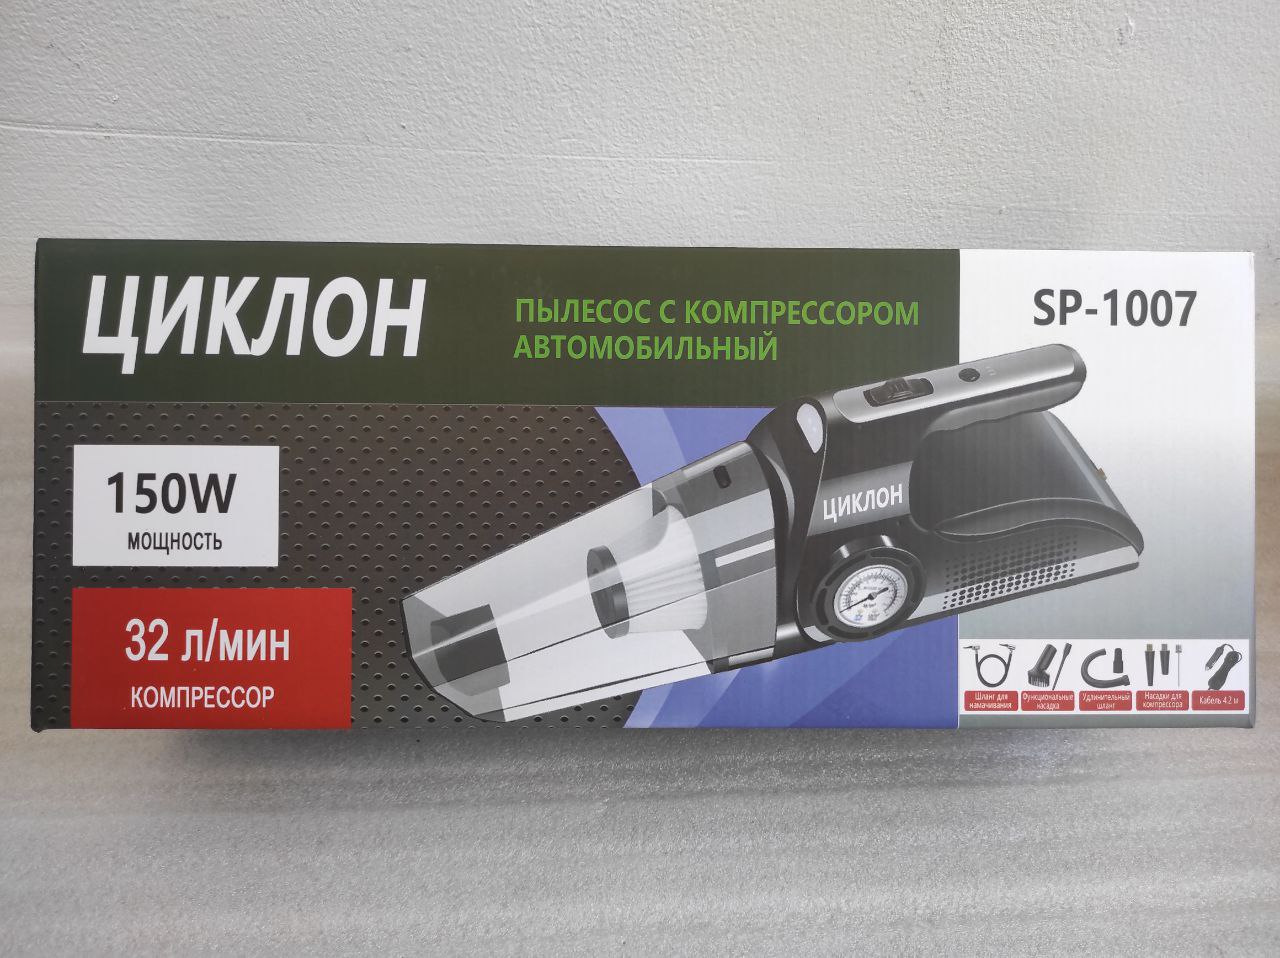 Пылесос компрессор автомобильный Циклон SP-1007 / 150W,35 л/мин